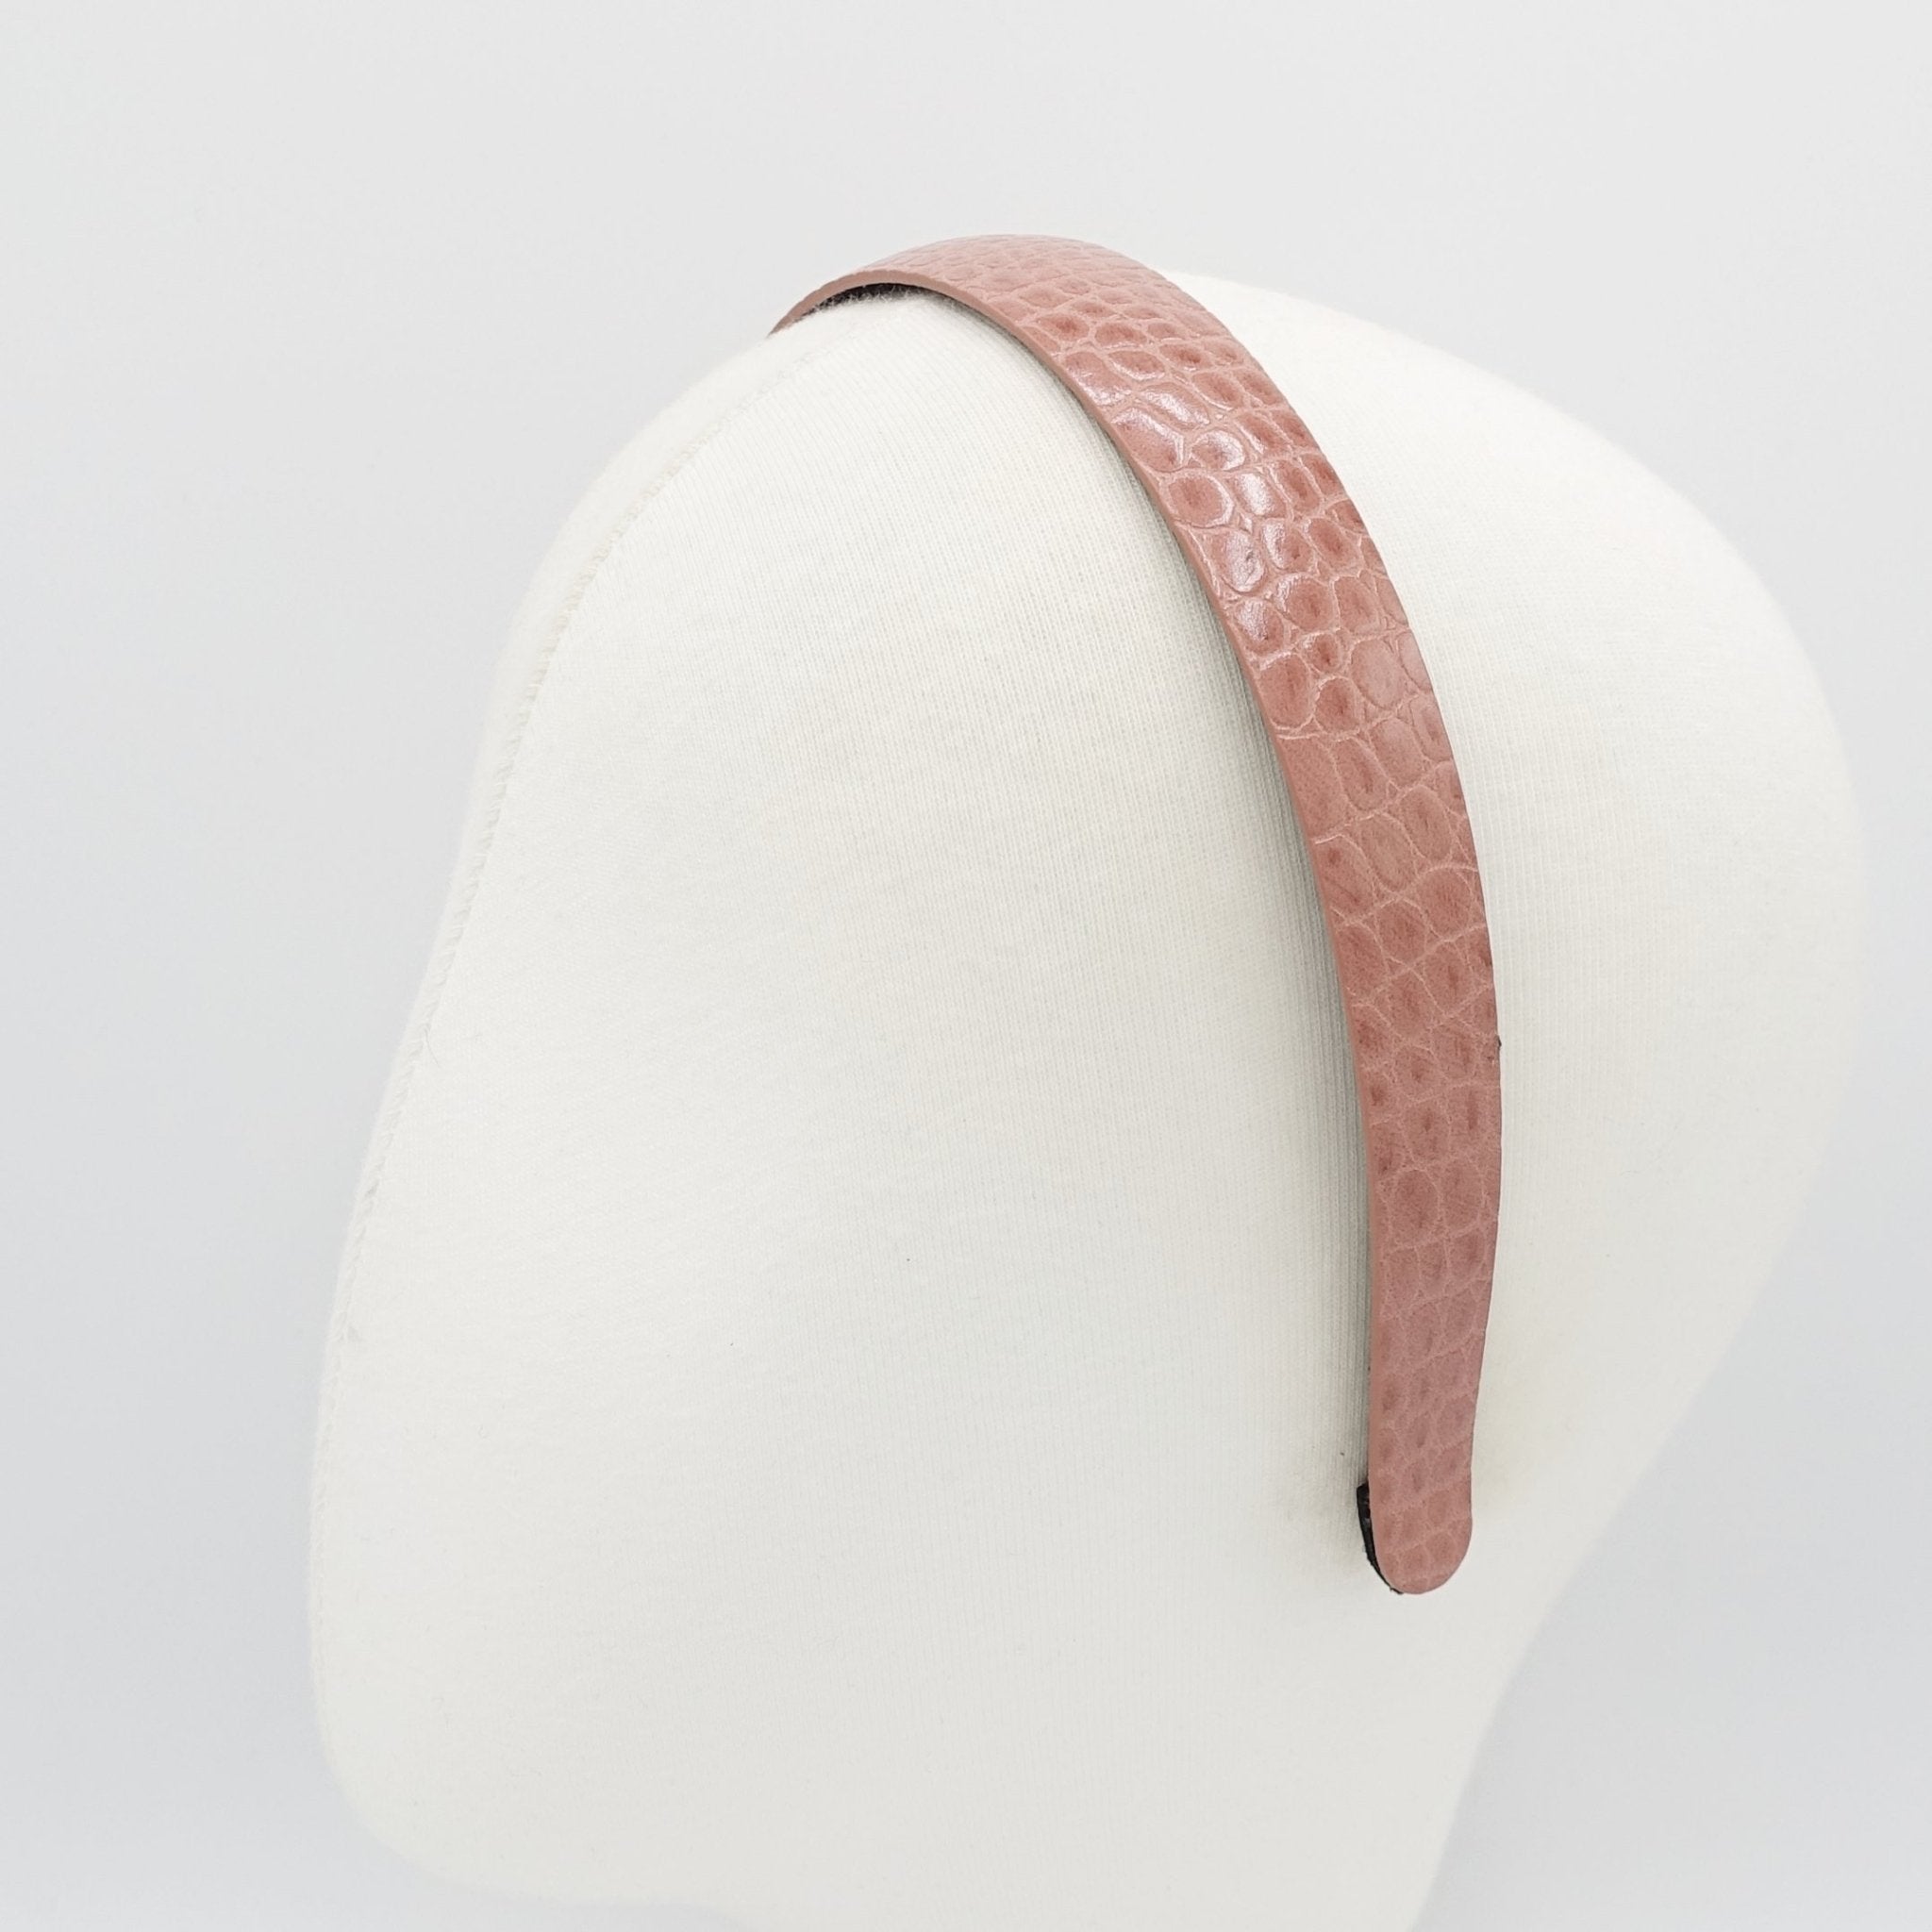 VeryShine python motivated faux leather headband  women fashion hairband